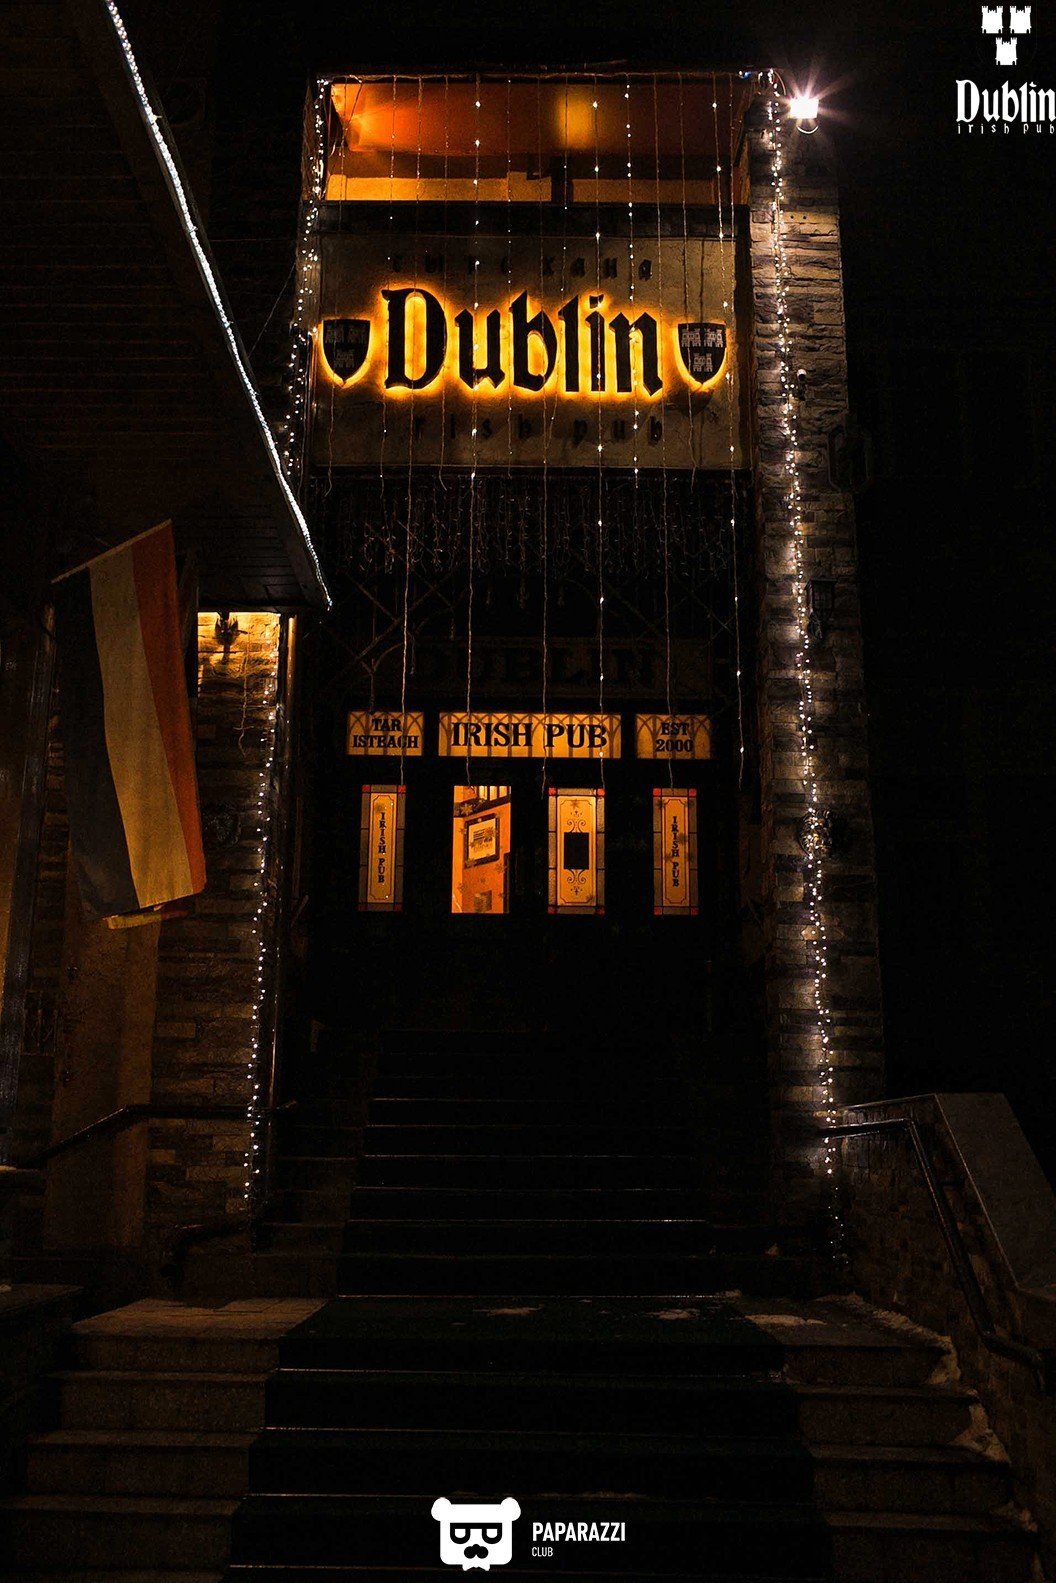 Irish Pub Dublin